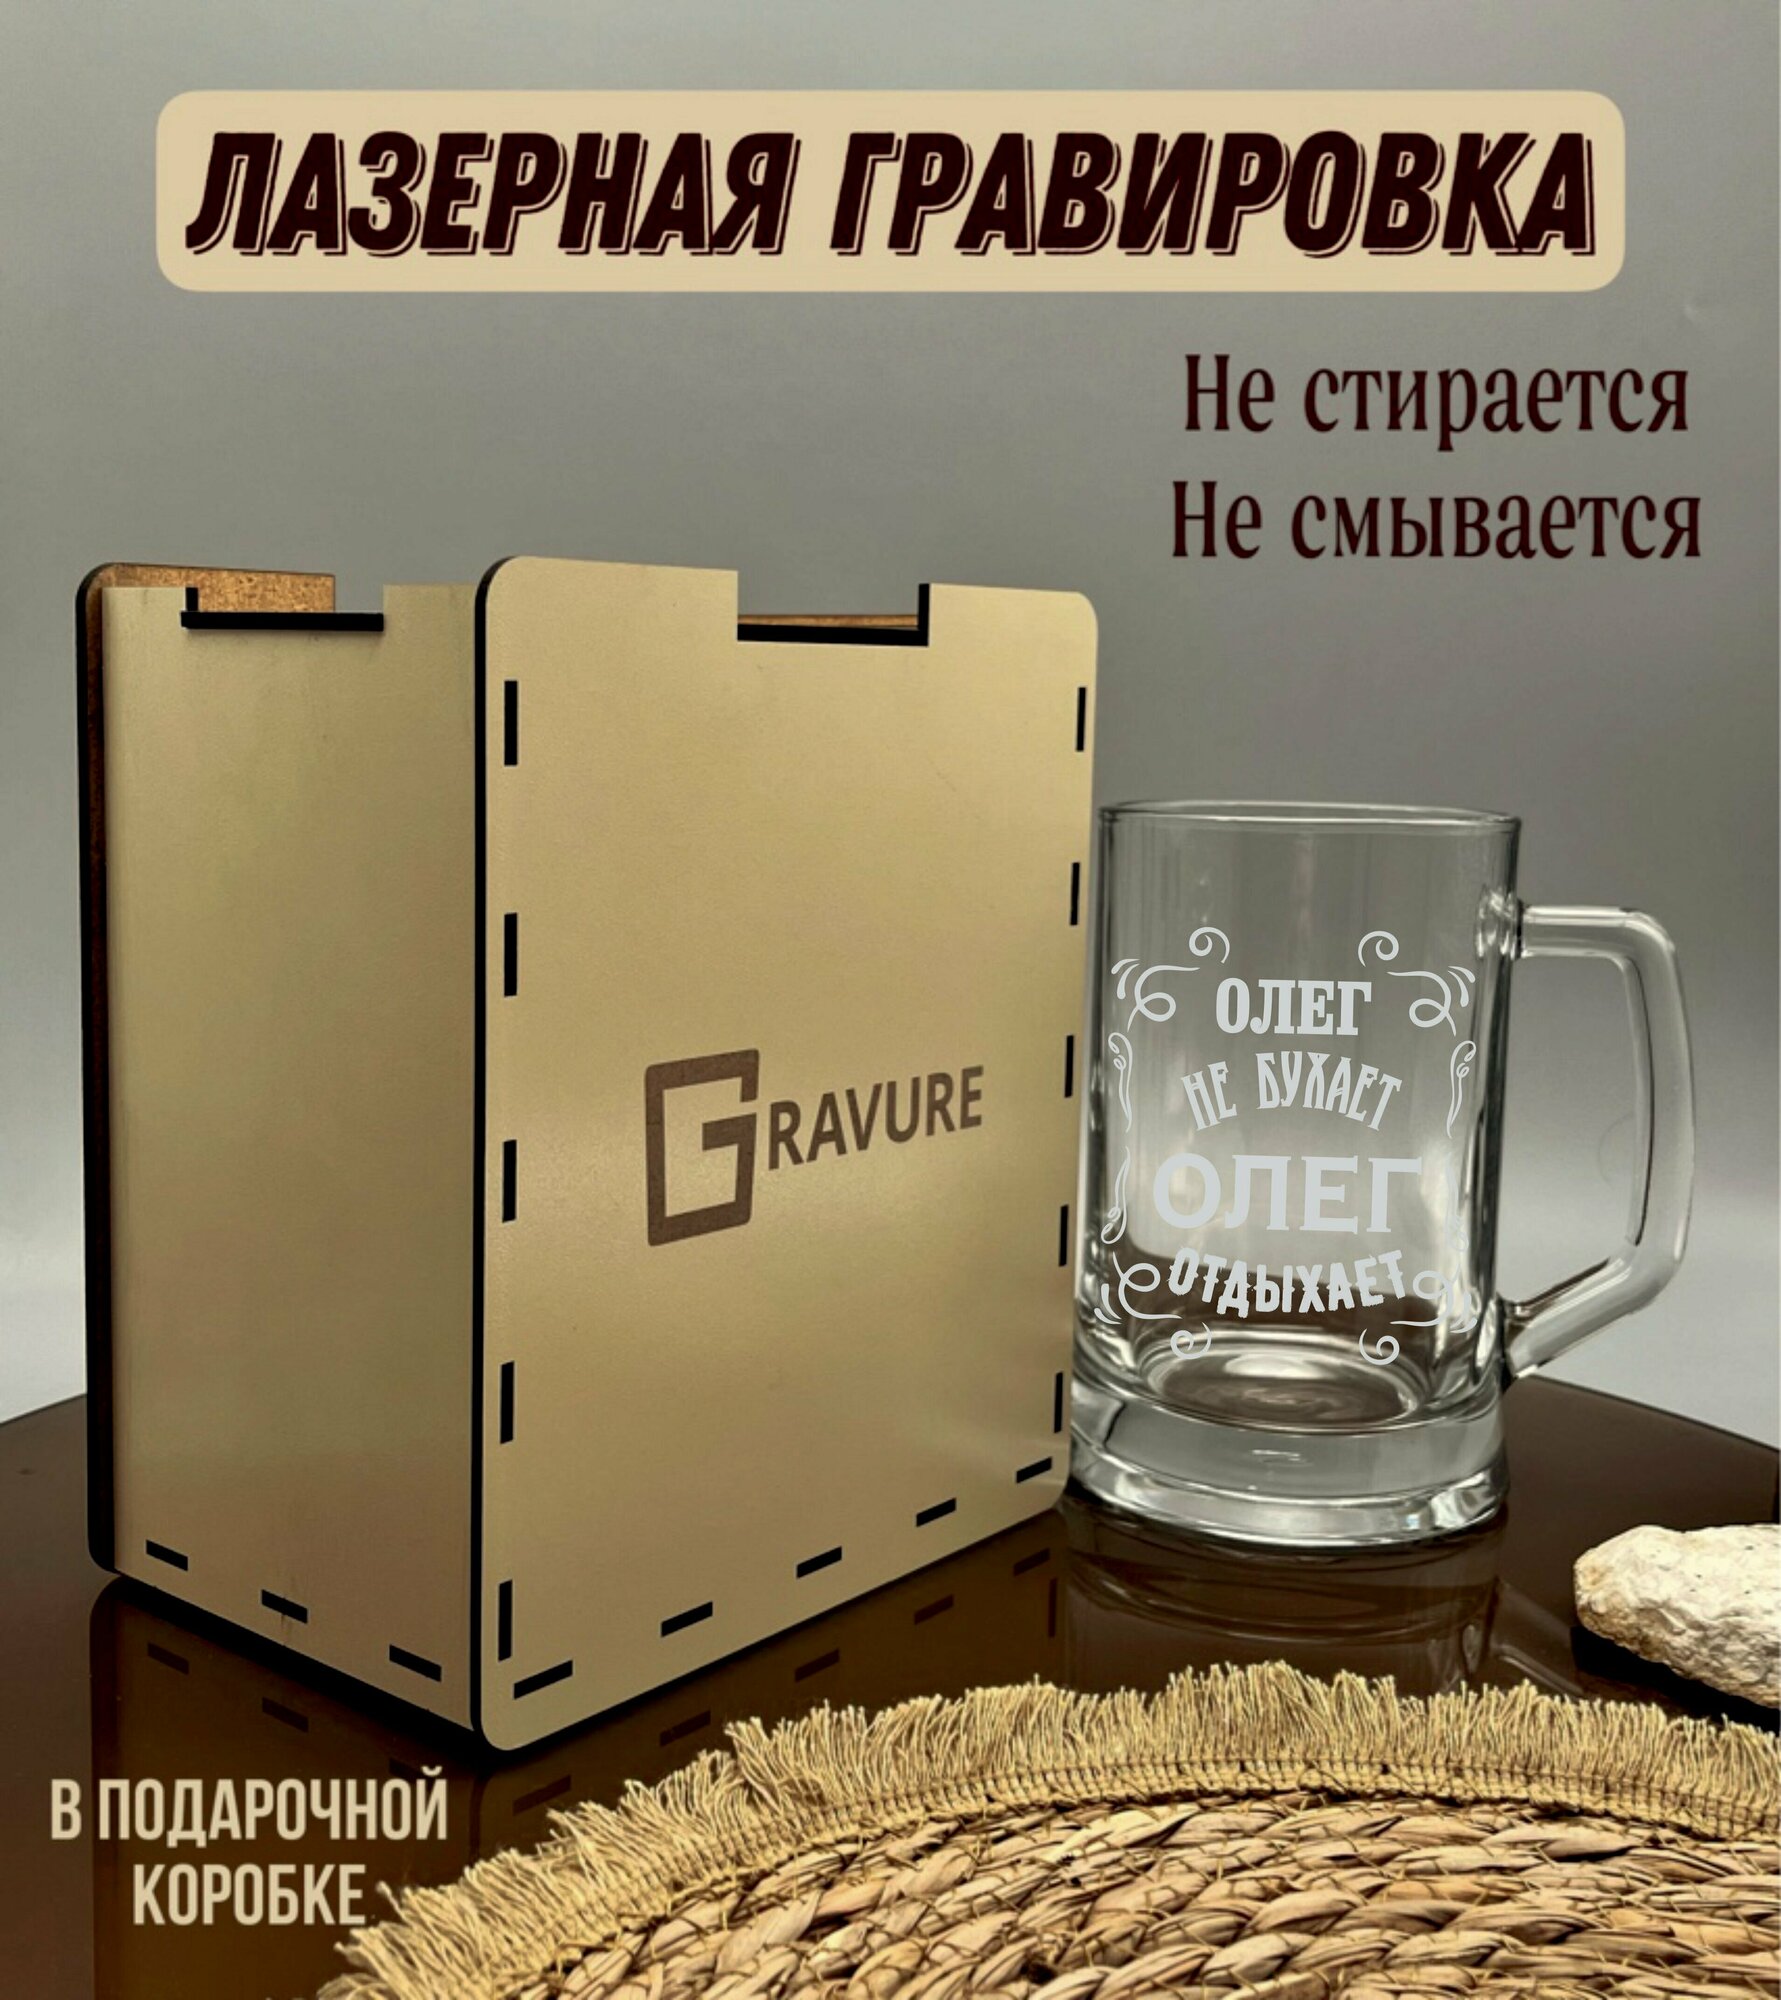 Кружка пивная с гравировкой "Олег не бухает, Олег отдыхает" именной подарок мужчине от GRFVURE